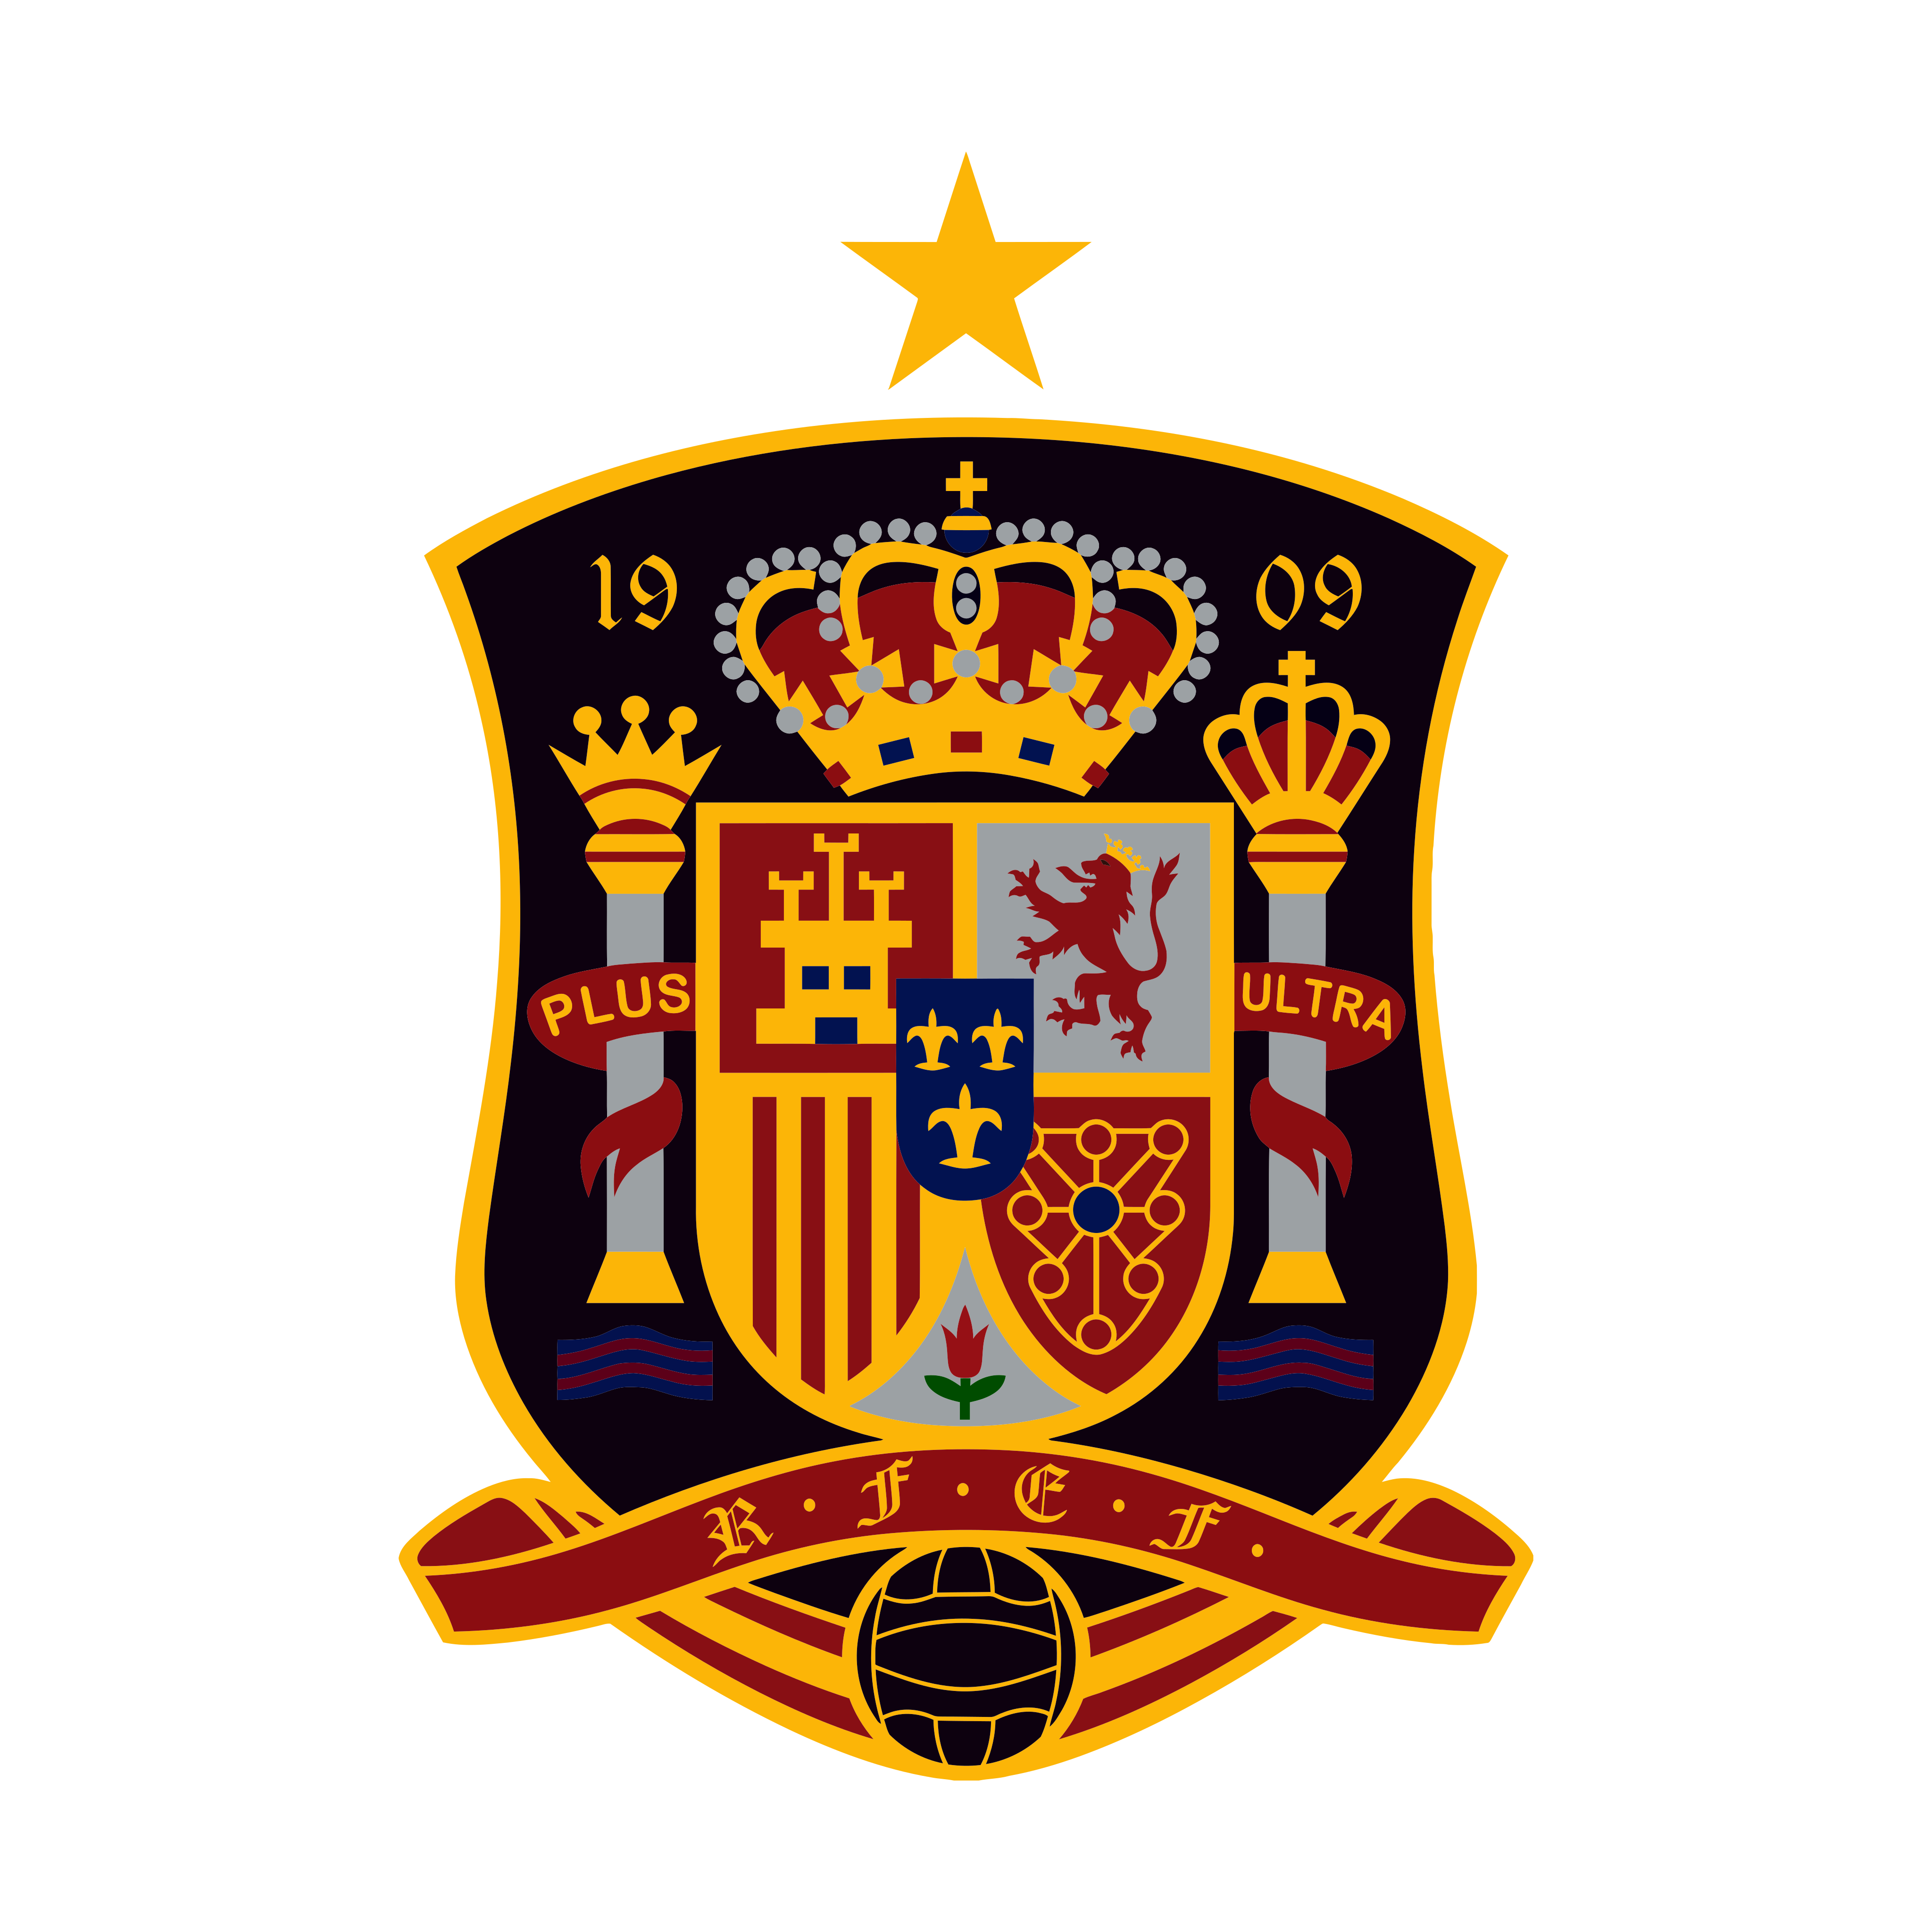 spain national football team logo 0 - Spain National Football Team Logo